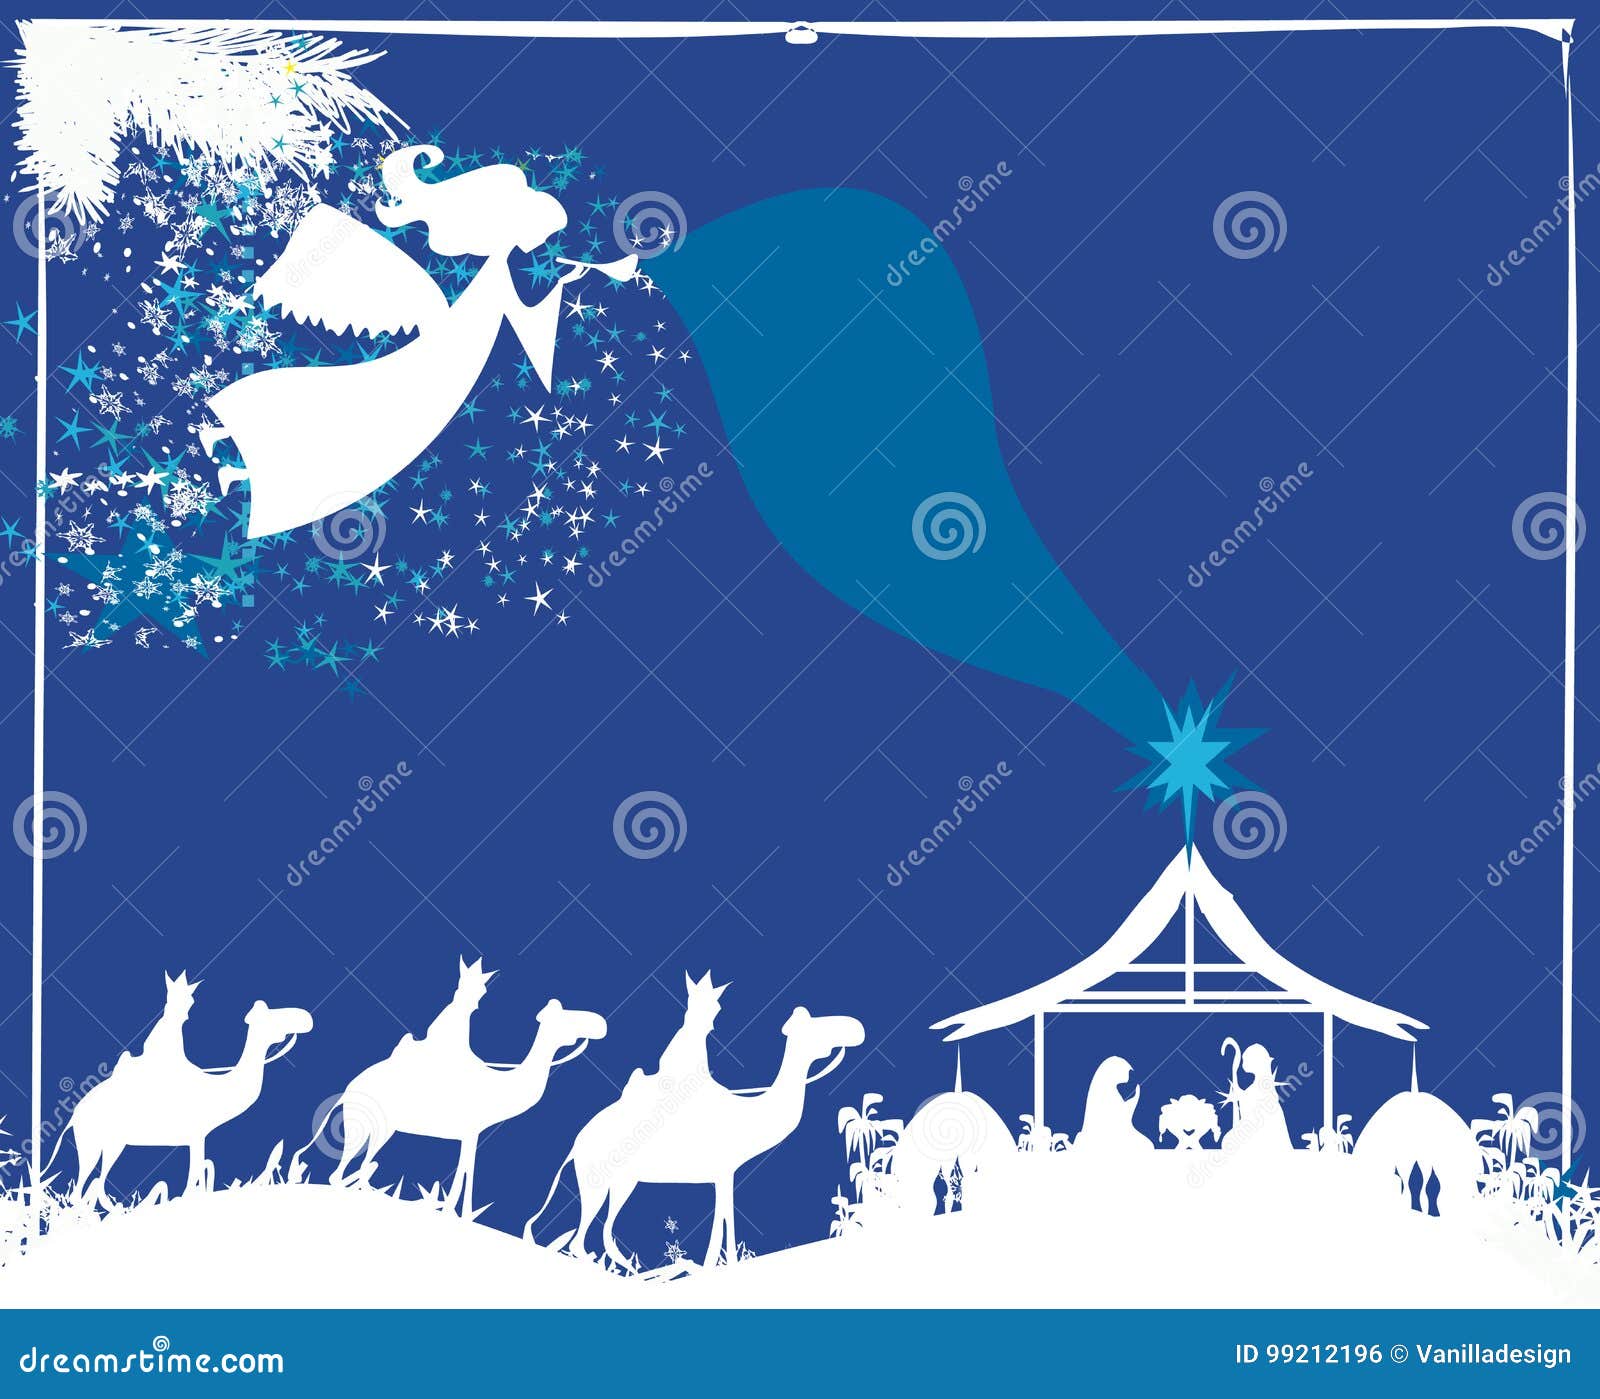 Sfondi Natalizi Religiosi.Scena Religiosa Di Nativita Di Natale Illustrazione Vettoriale Illustrazione Di Preghiera Jesus 99212196